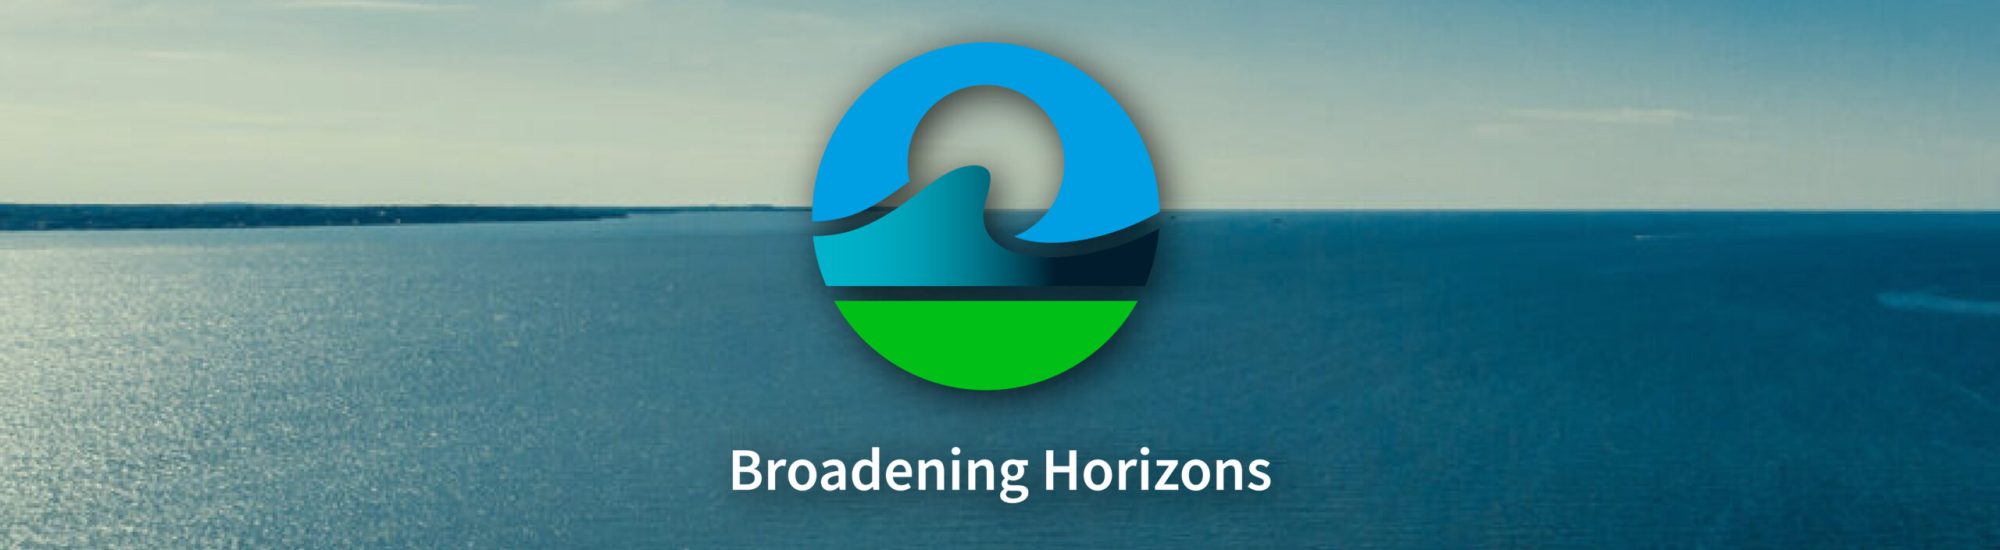 Broadening Horizons_HP